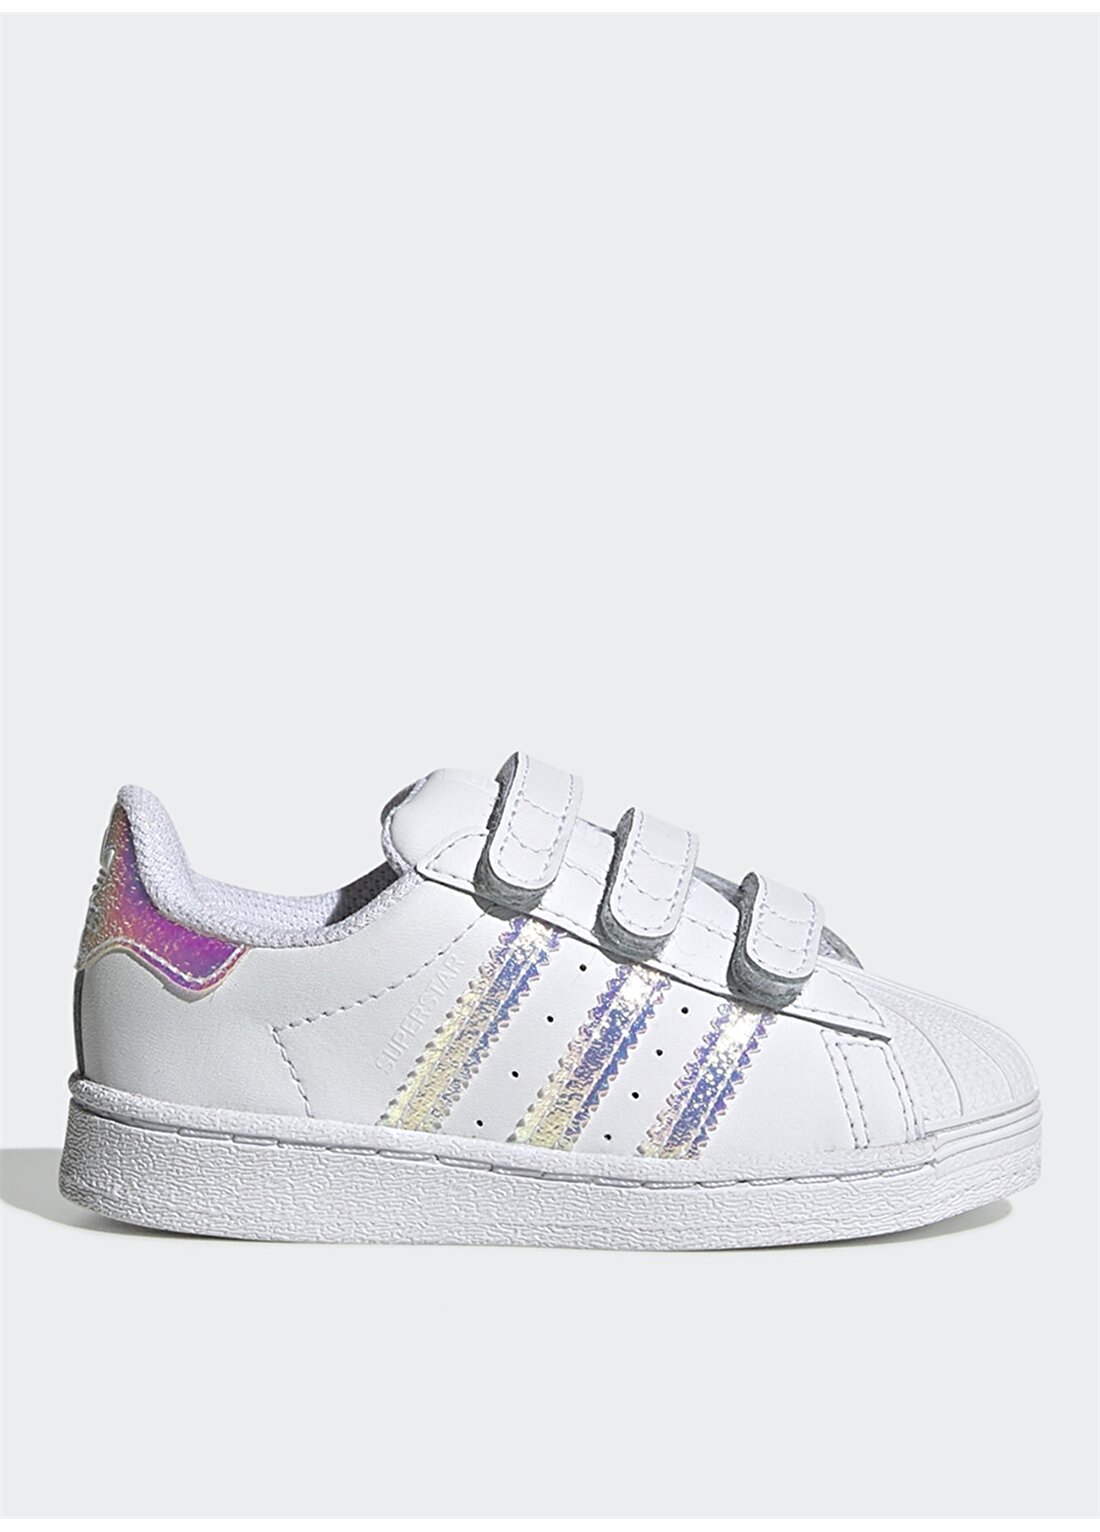 Adidas FV3657 Superstar Bantlı Beyaz Kız Çocuk Yürüyüş Ayakkabısı